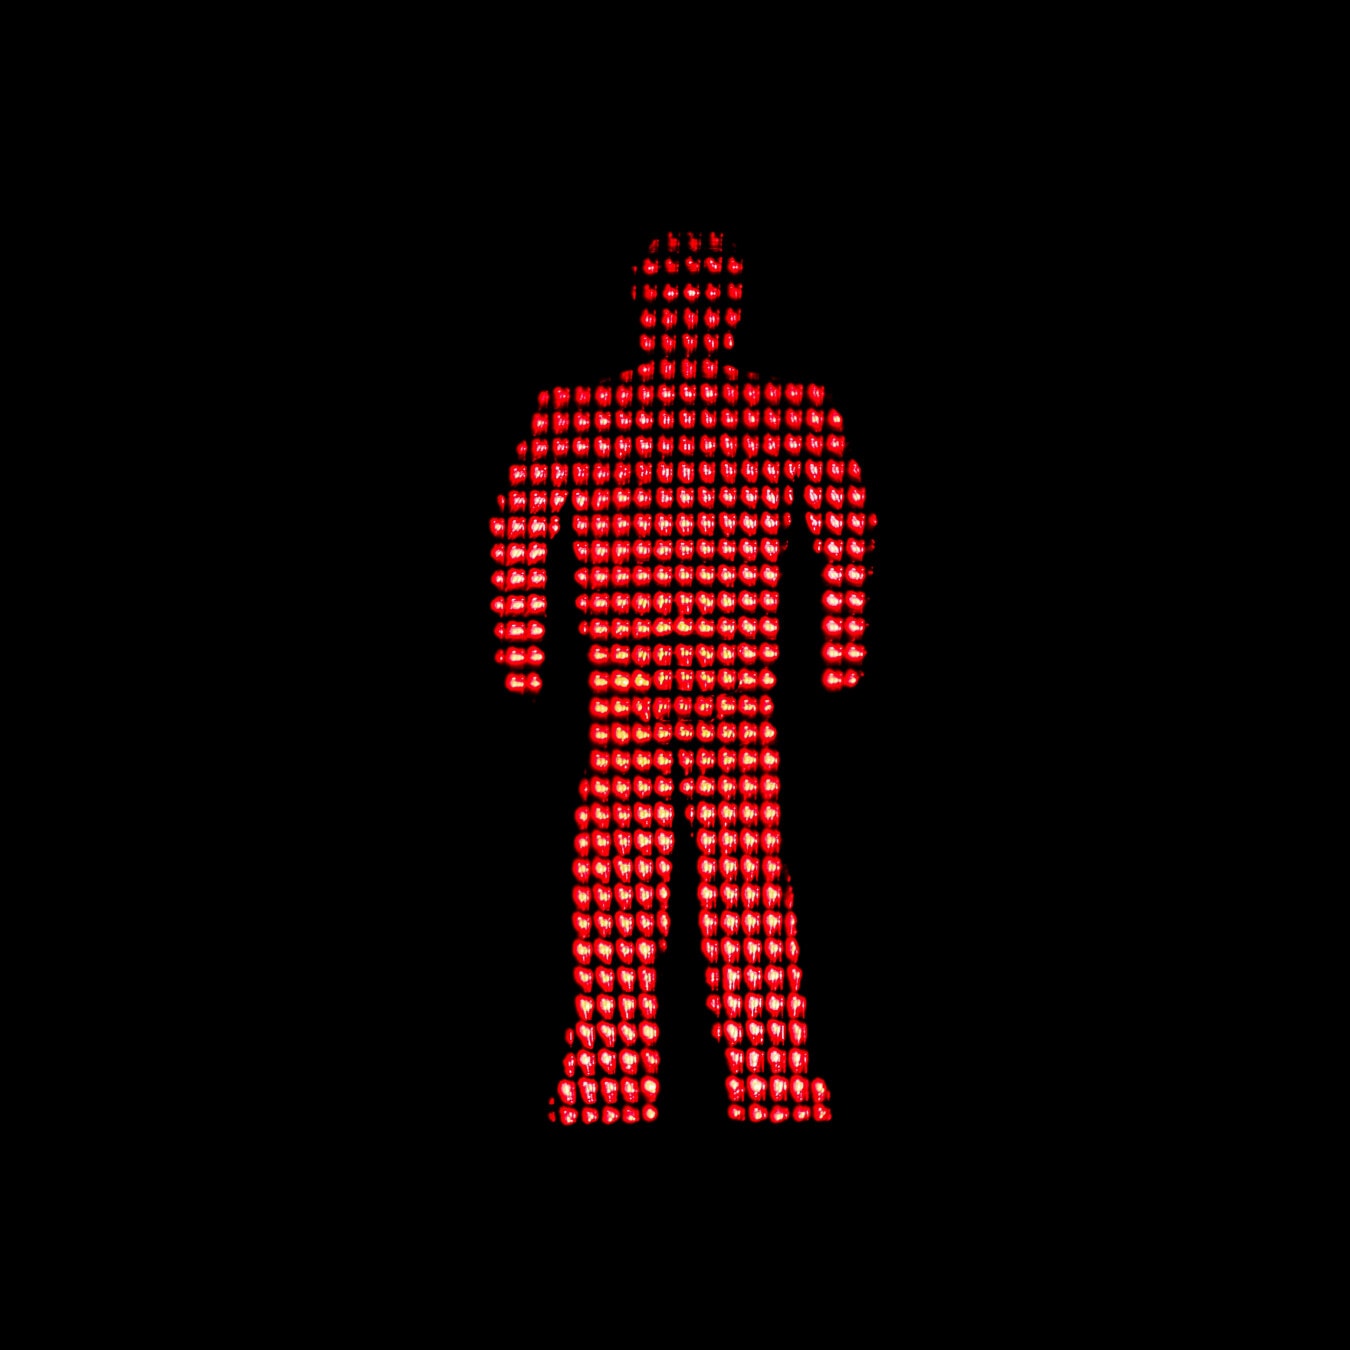 lampu merah, Semafor, lampu lalu lintas, cahaya, merah, kontrol lalu lintas, peringatan, Stop, simbol, lalu lintas